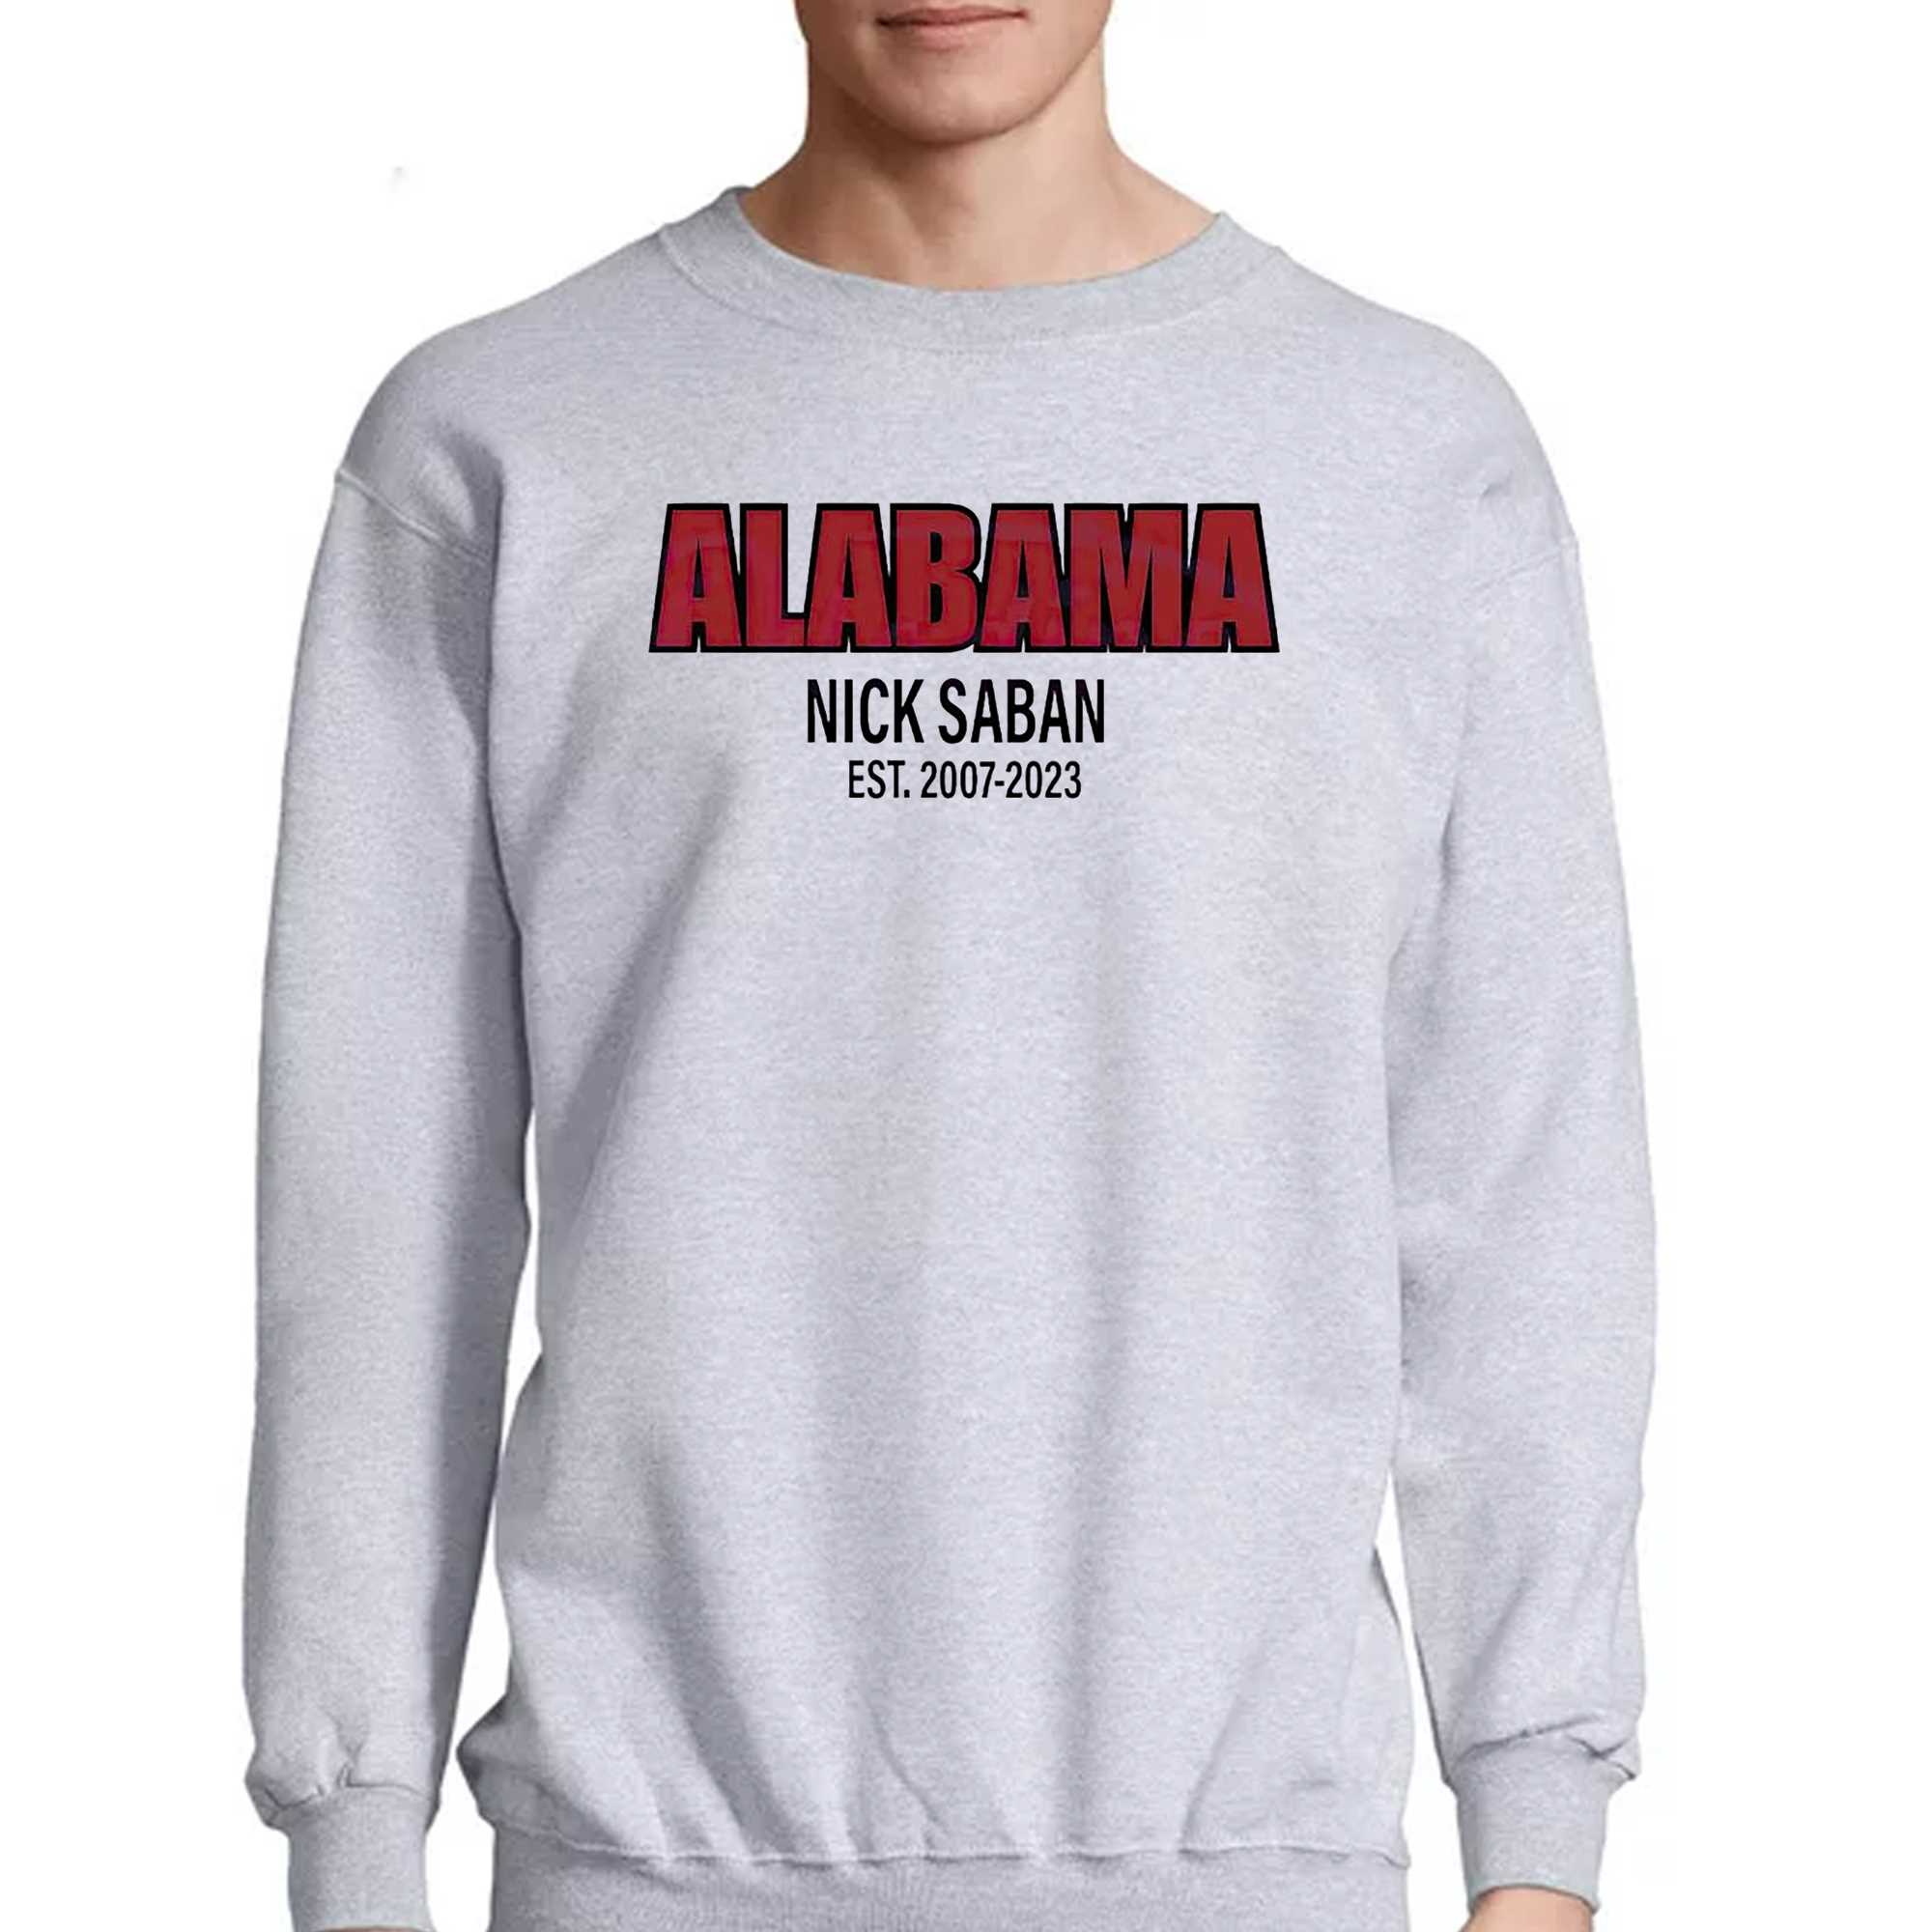 Alabama Nick Saban Coach Est 2007 2023 Shirt 